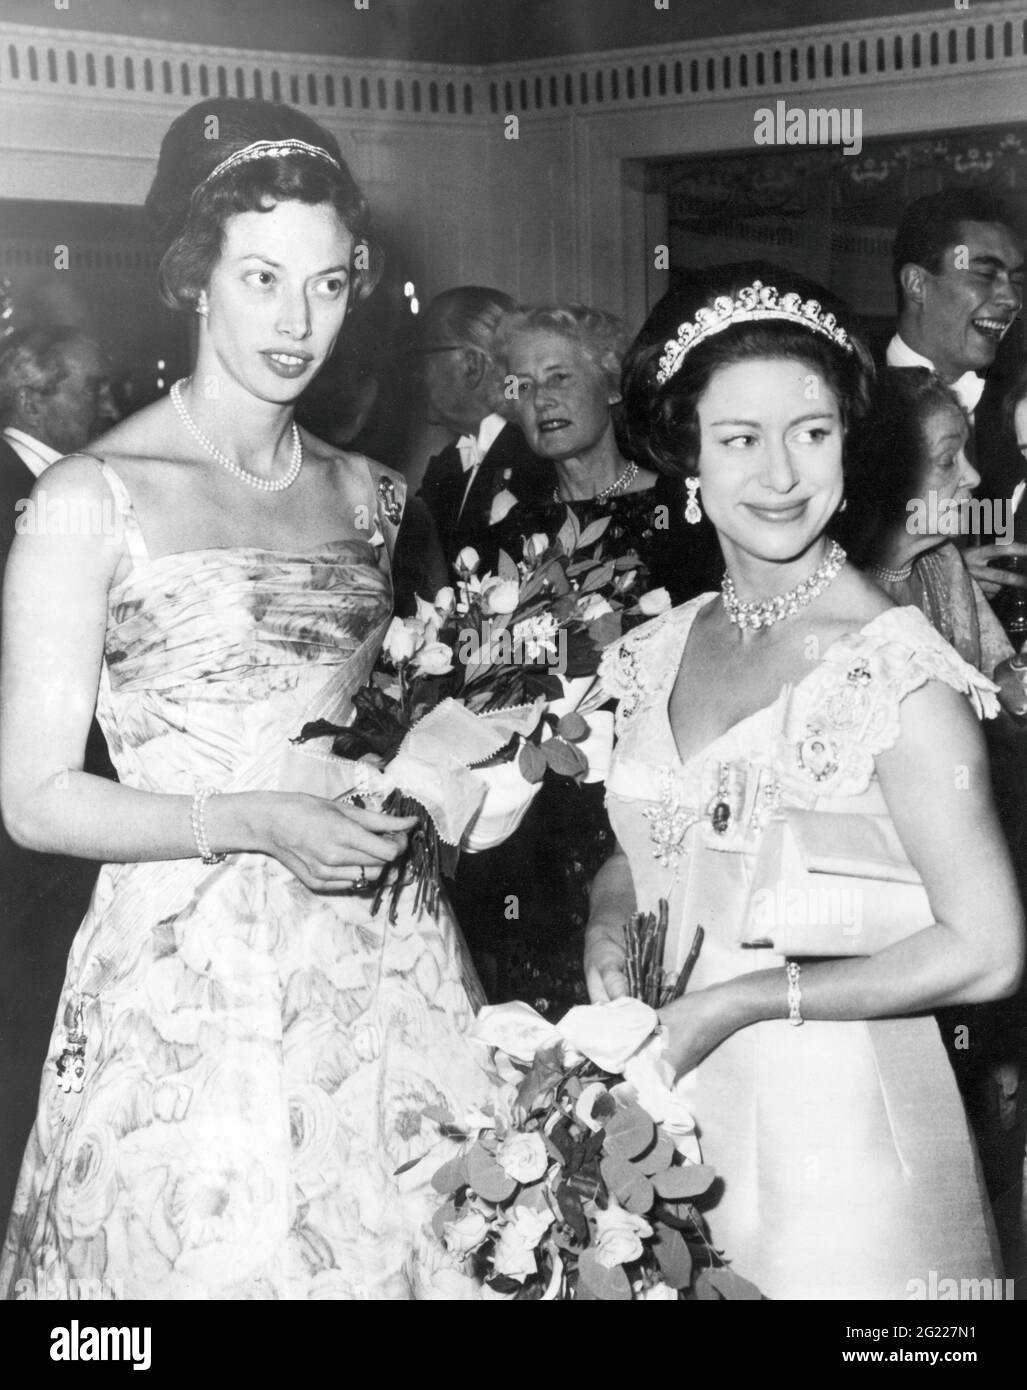 Elisabeth, * 8.5.1935, princesse du Danemark, demi-longueur (à gauche), avec princesse Margaret, INFO-AUTORISATION-DROITS-SUPPLÉMENTAIRES-NON-DISPONIBLE Banque D'Images